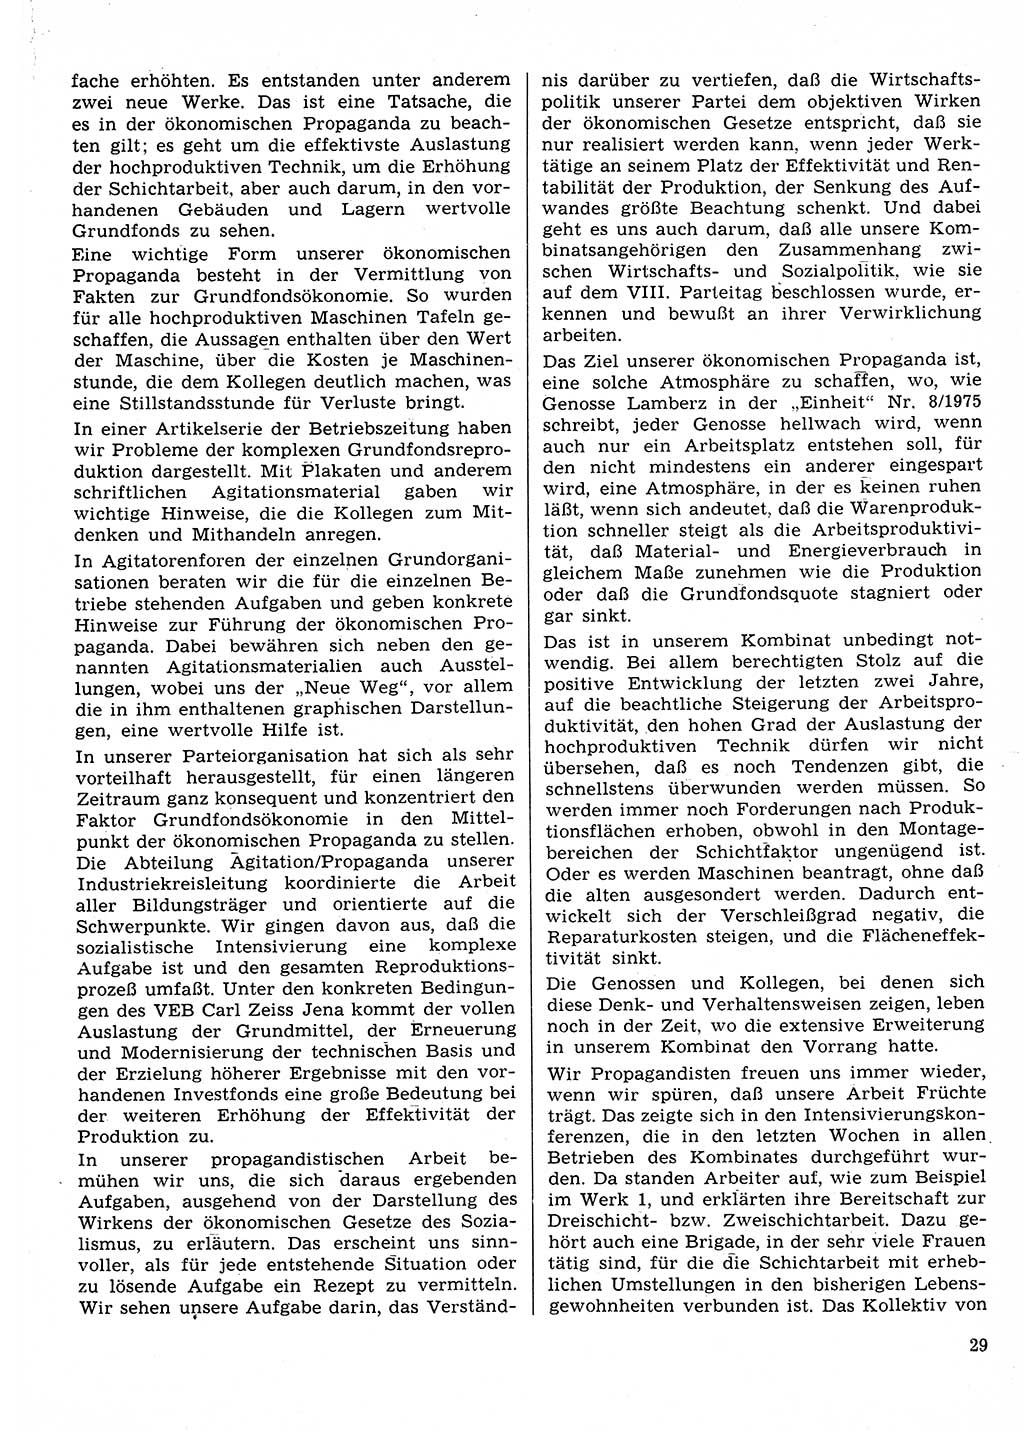 Neuer Weg (NW), Organ des Zentralkomitees (ZK) der SED (Sozialistische Einheitspartei Deutschlands) für Fragen des Parteilebens, 31. Jahrgang [Deutsche Demokratische Republik (DDR)] 1976, Seite 29 (NW ZK SED DDR 1976, S. 29)